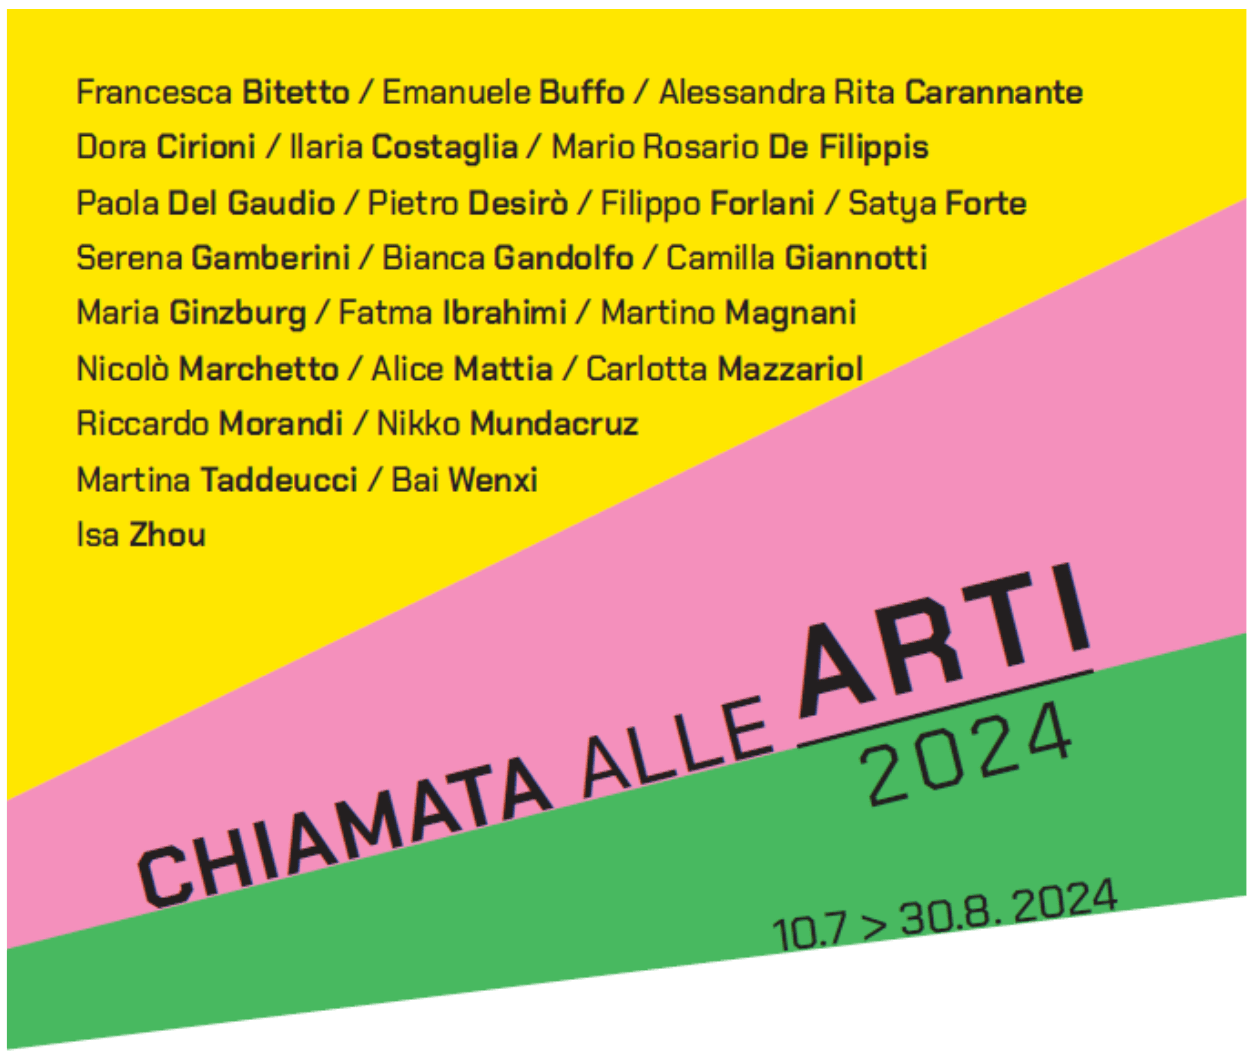 Mostra - Chiamata alle Arti | 2024 - Mucciaccia Gallery Project